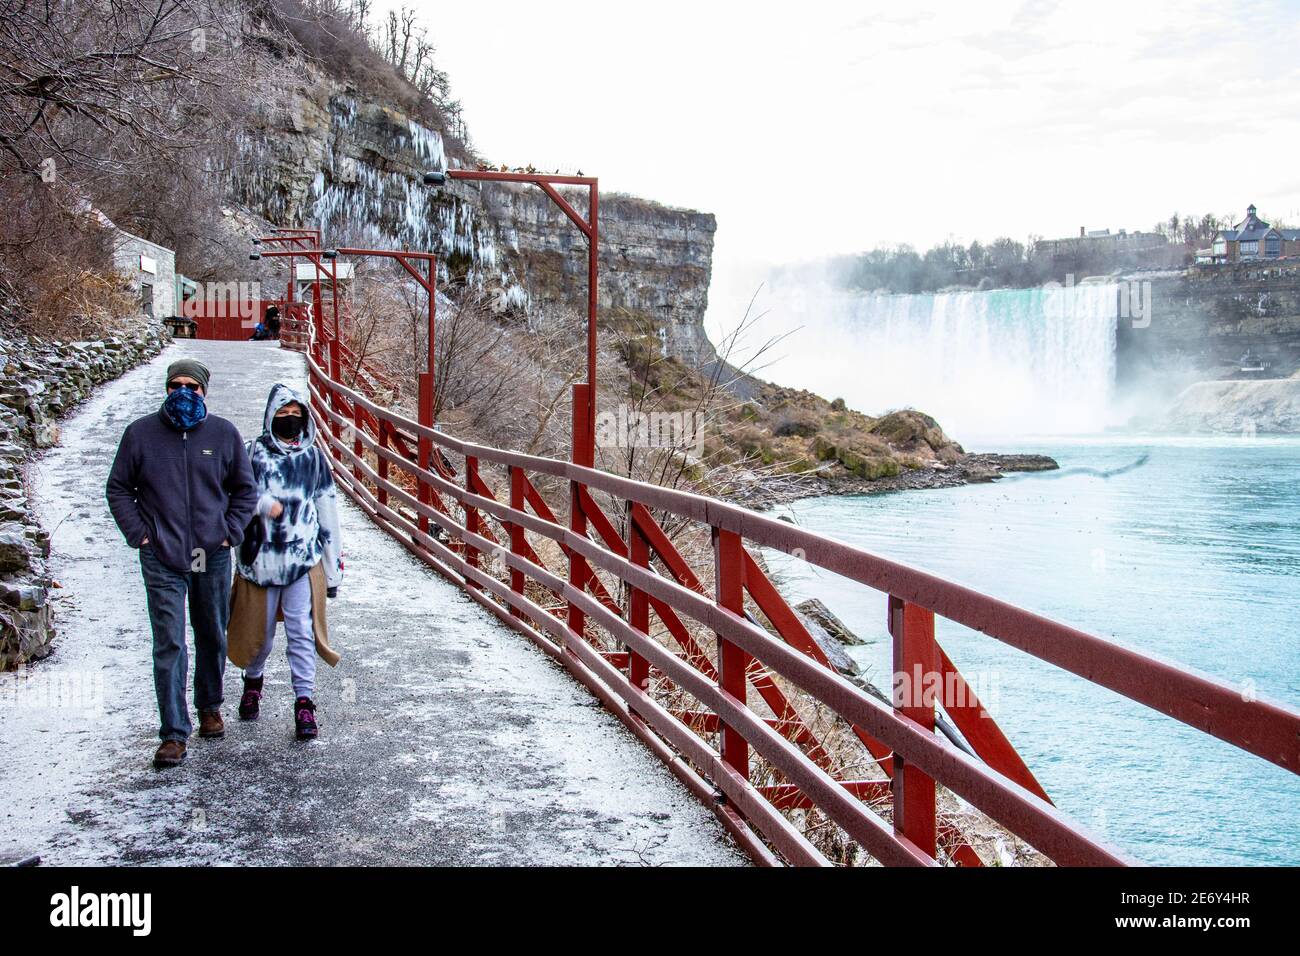 Grotte des vents en hiver, Niagara Falls, NY, États-Unis Banque D'Images